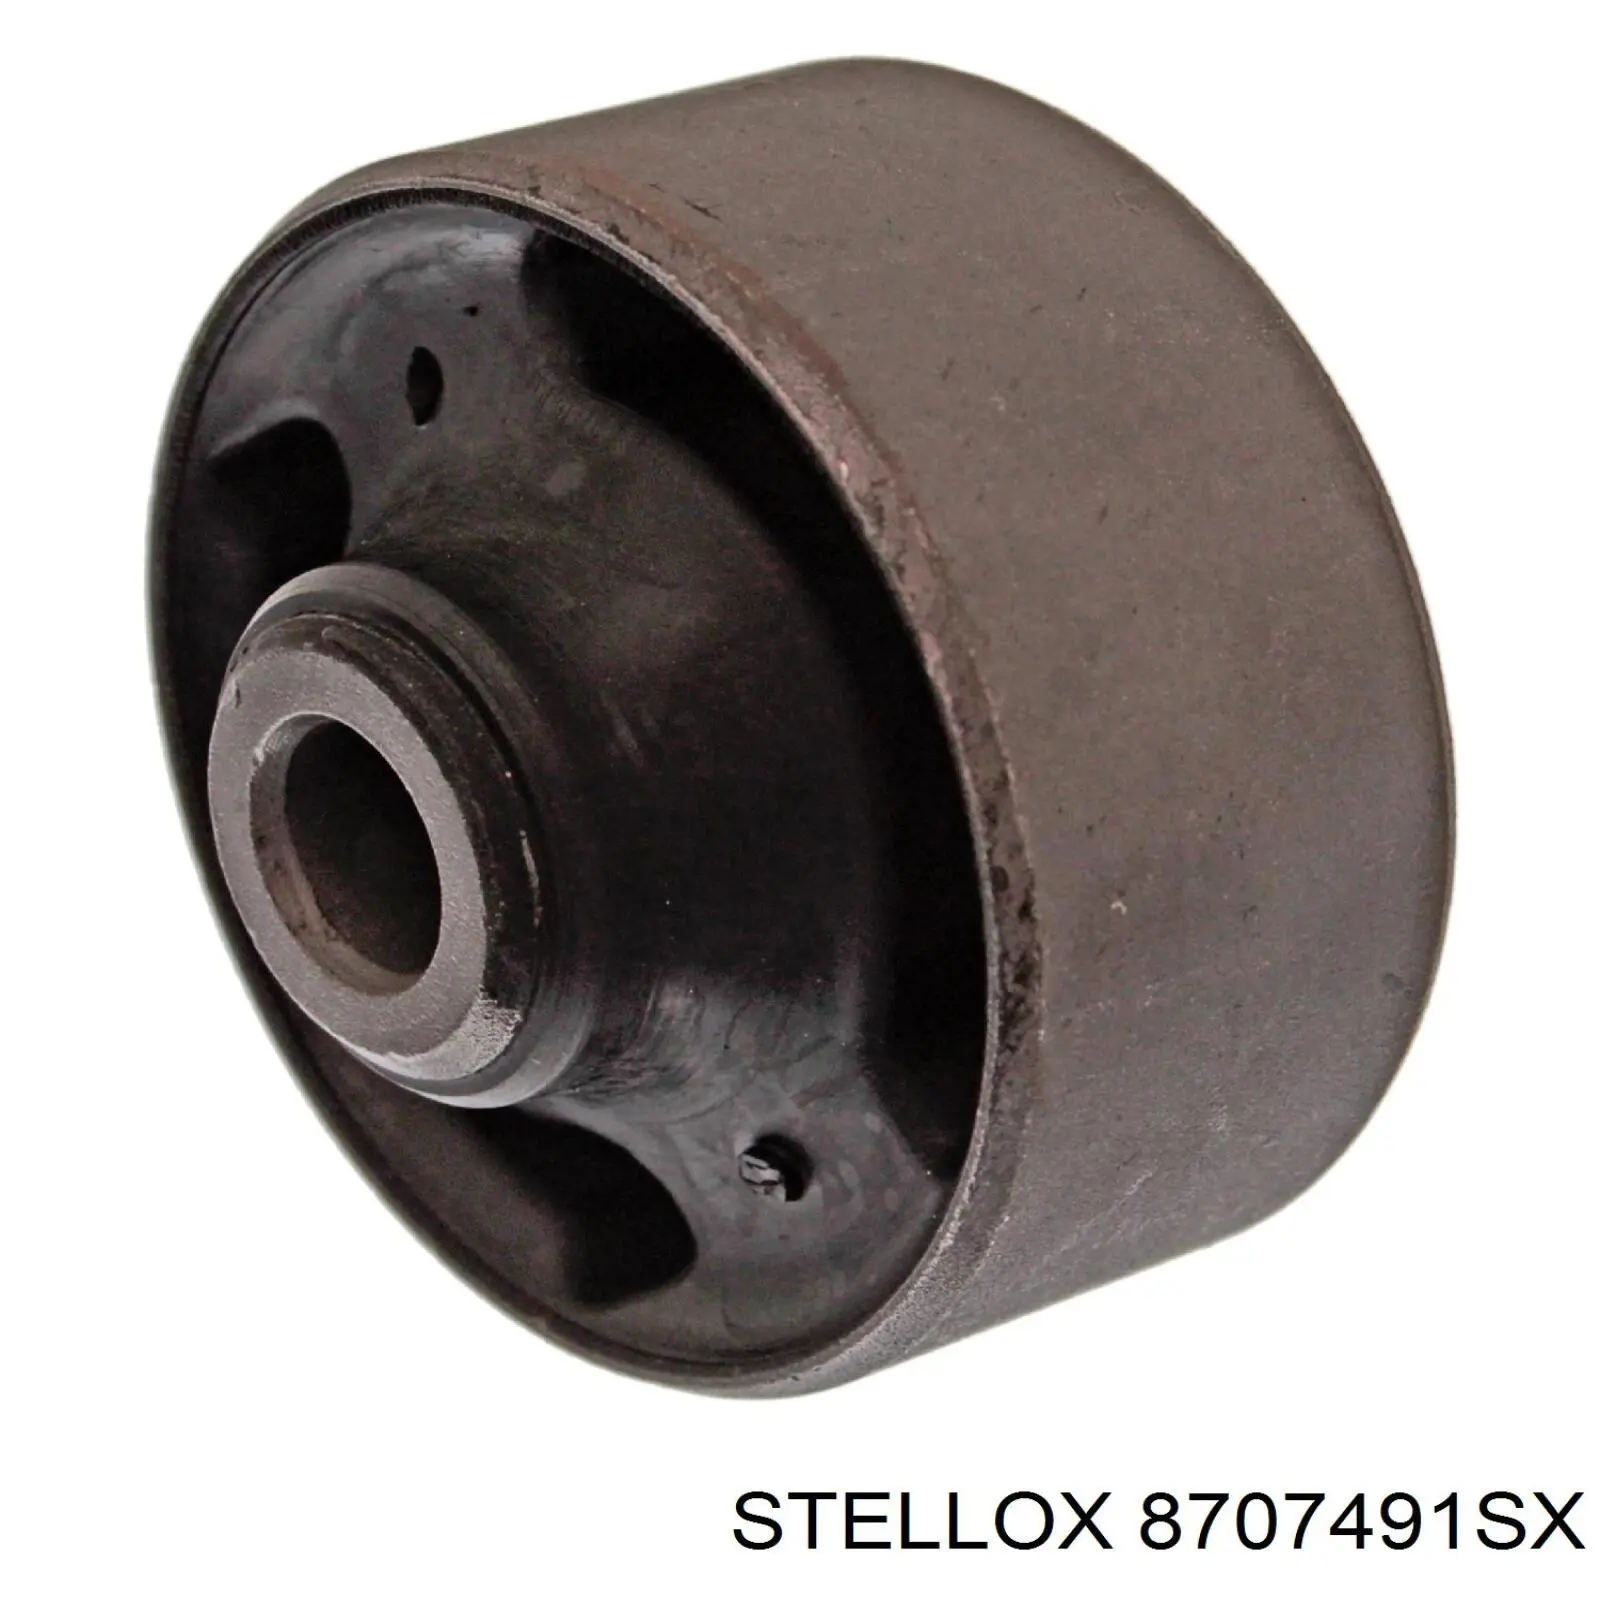 8707491SX Stellox silentblock de suspensión delantero inferior